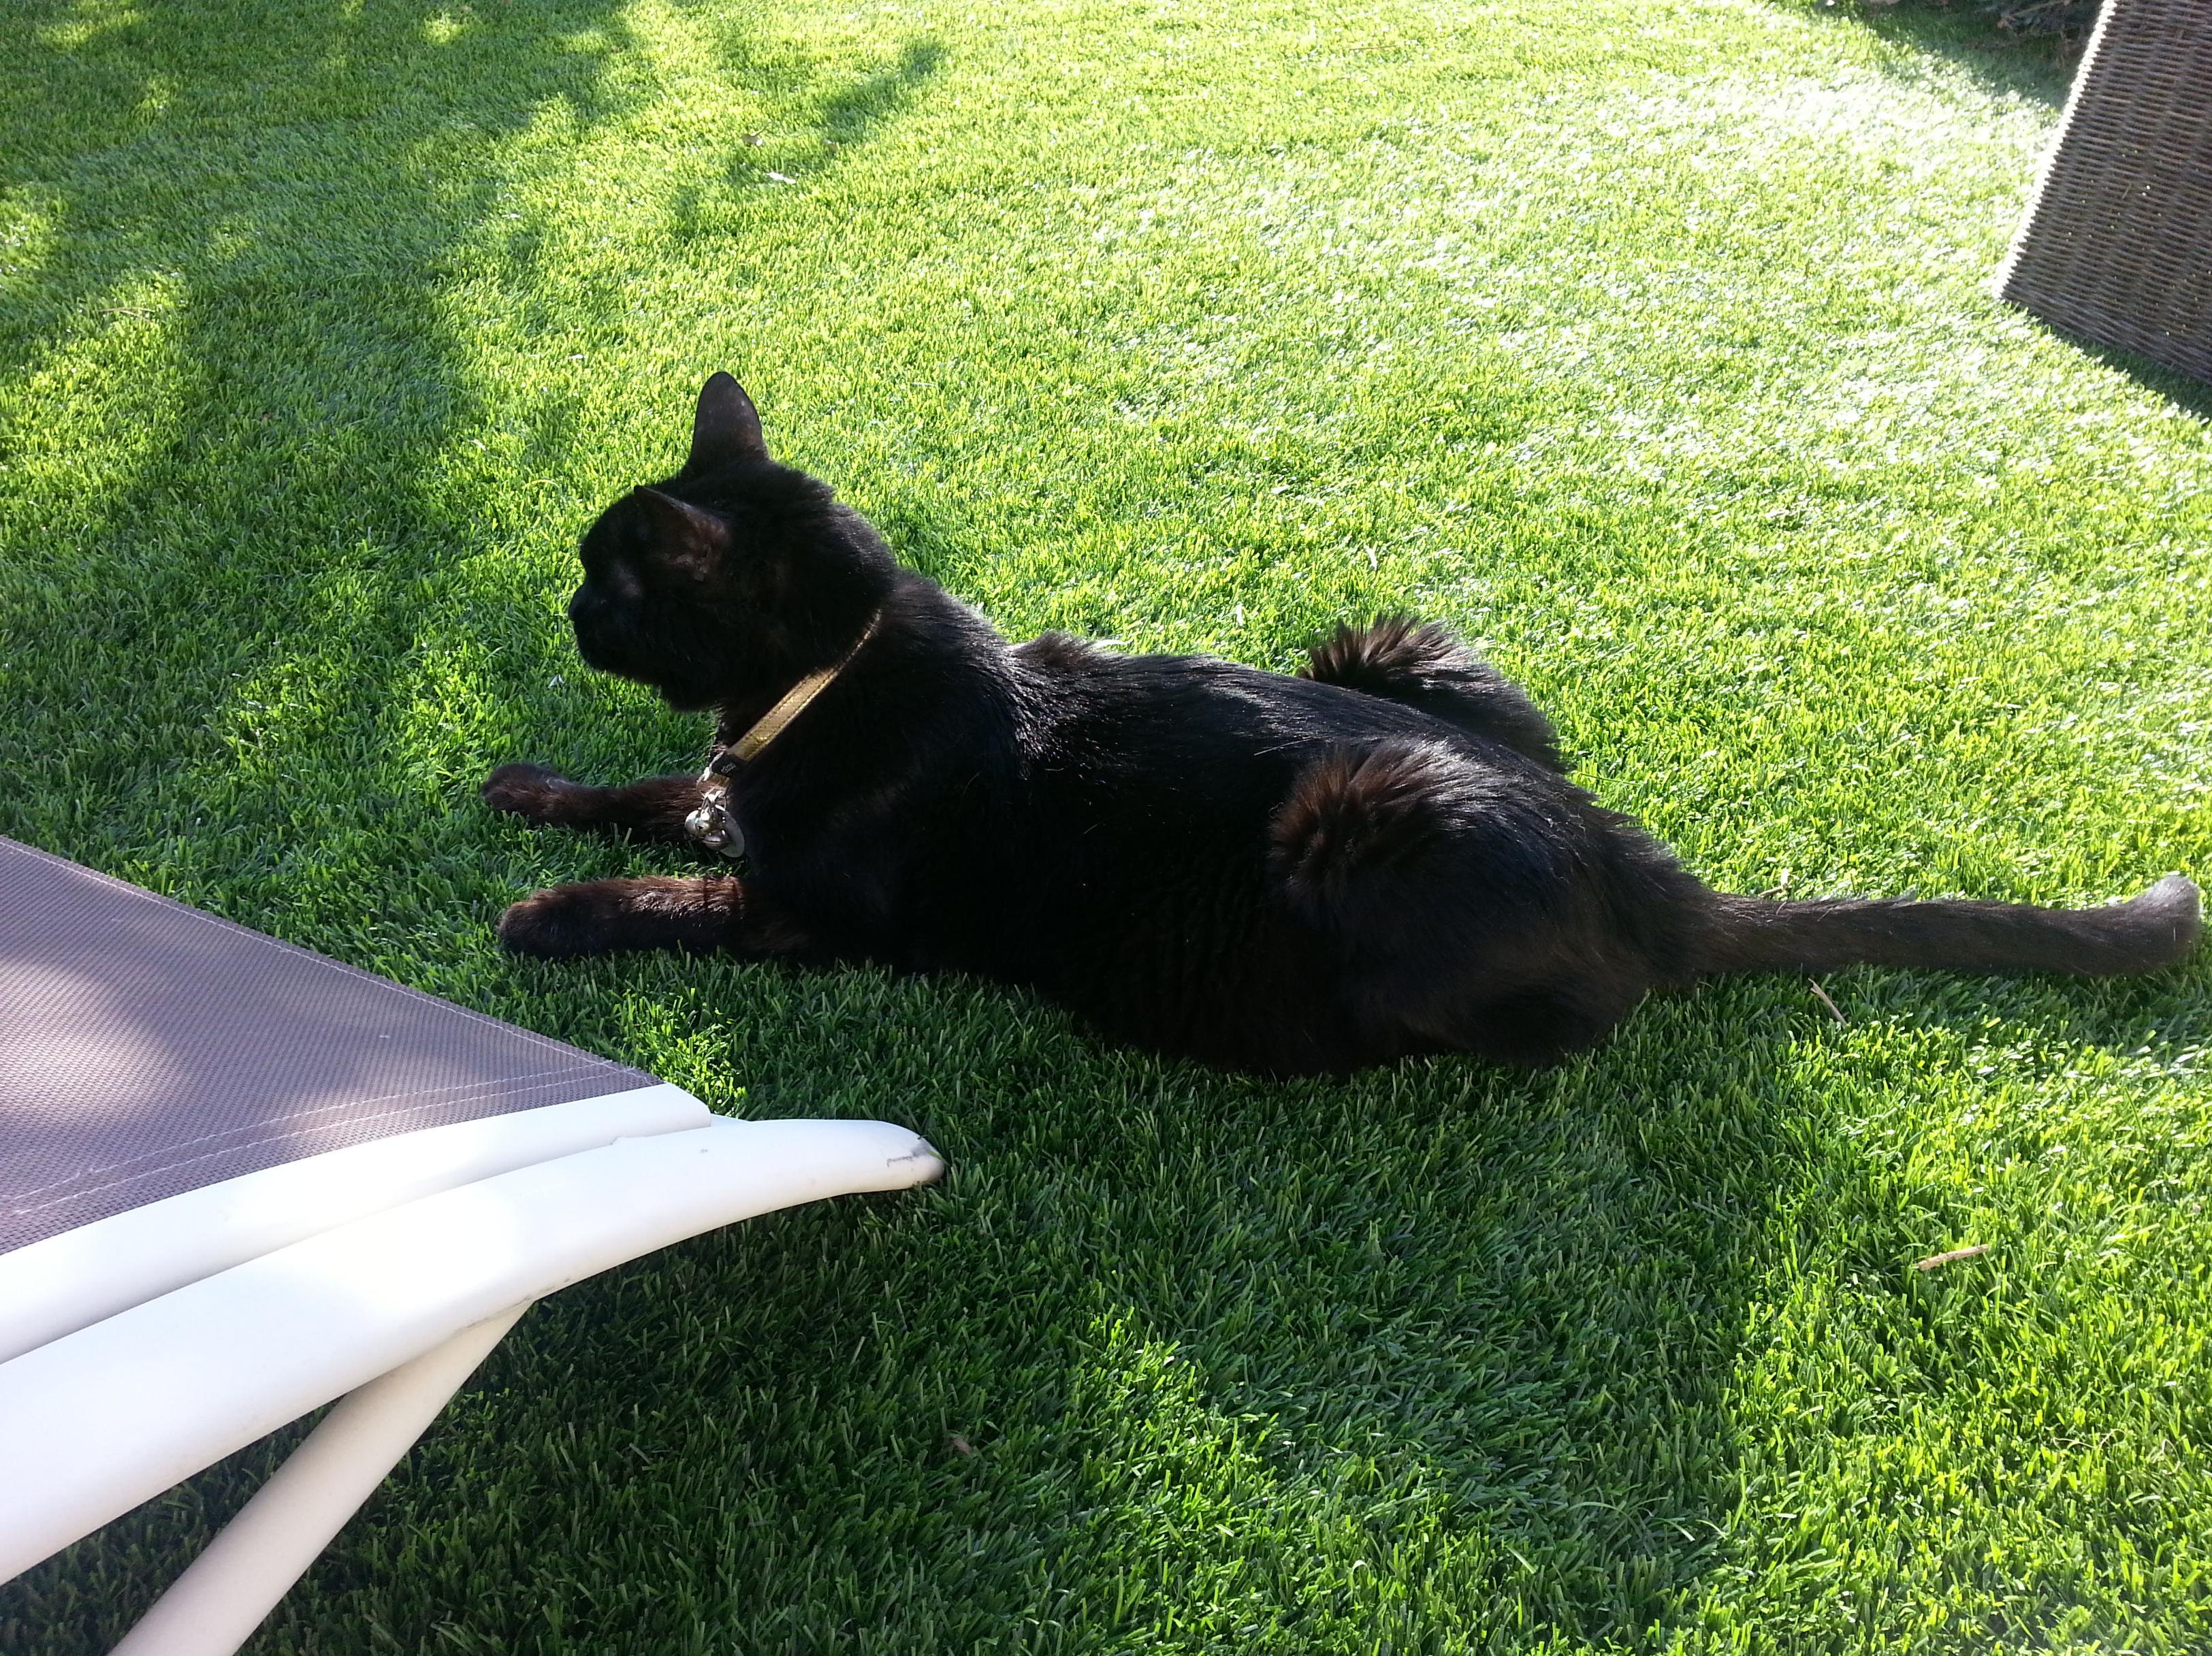 Coco disfrutando del solete en el jardín, sobre el césped artificial